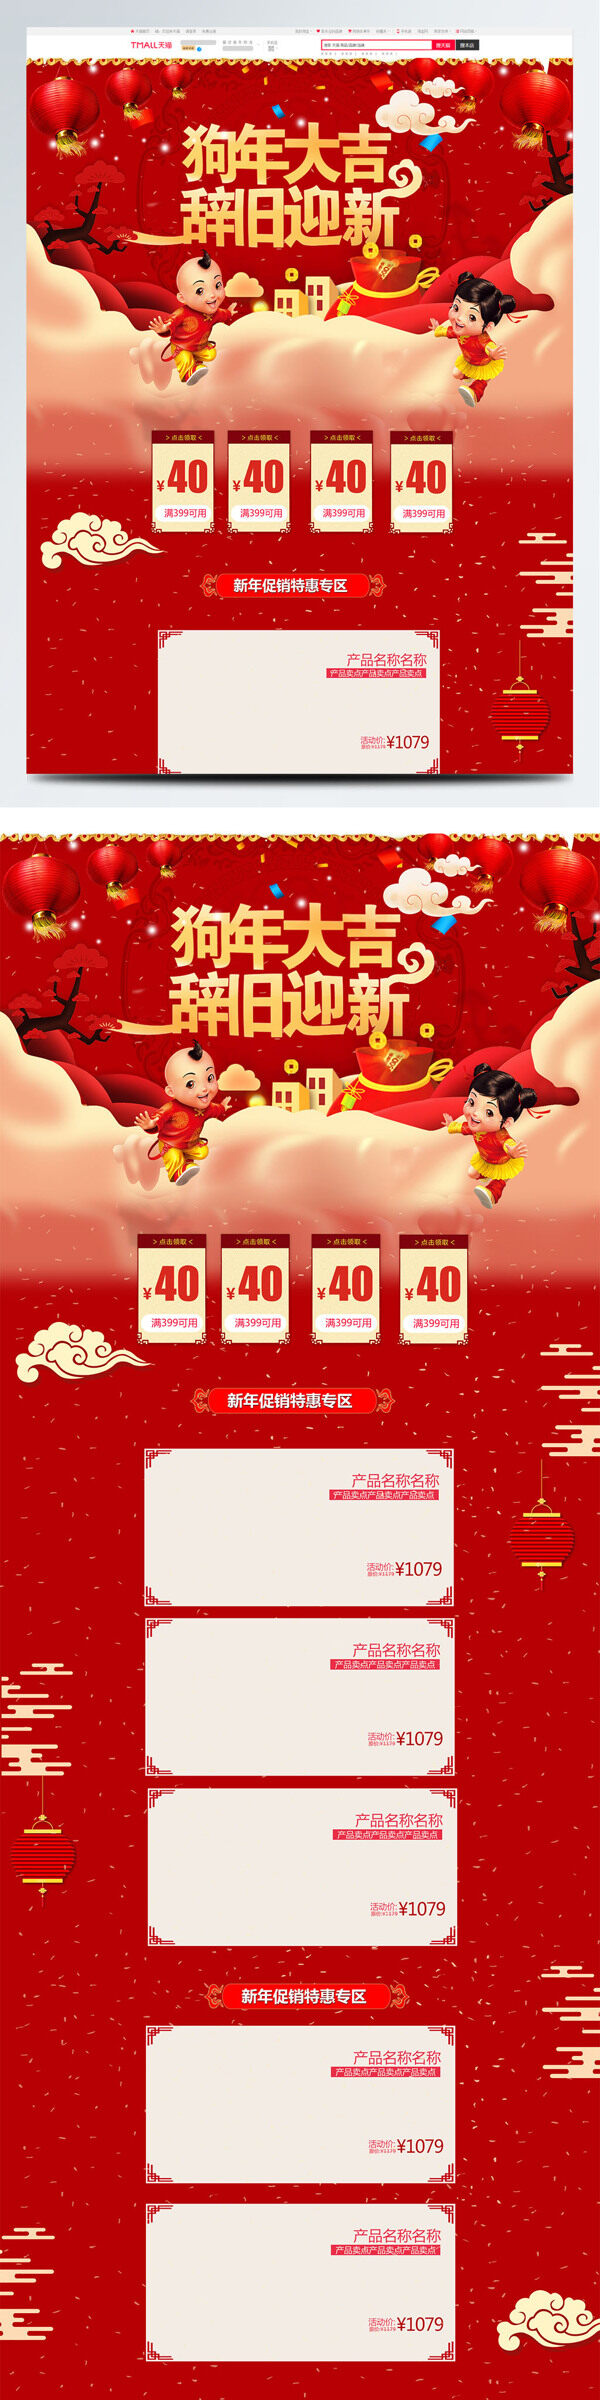 红色喜庆电商促销新年主题数码电器首页模版